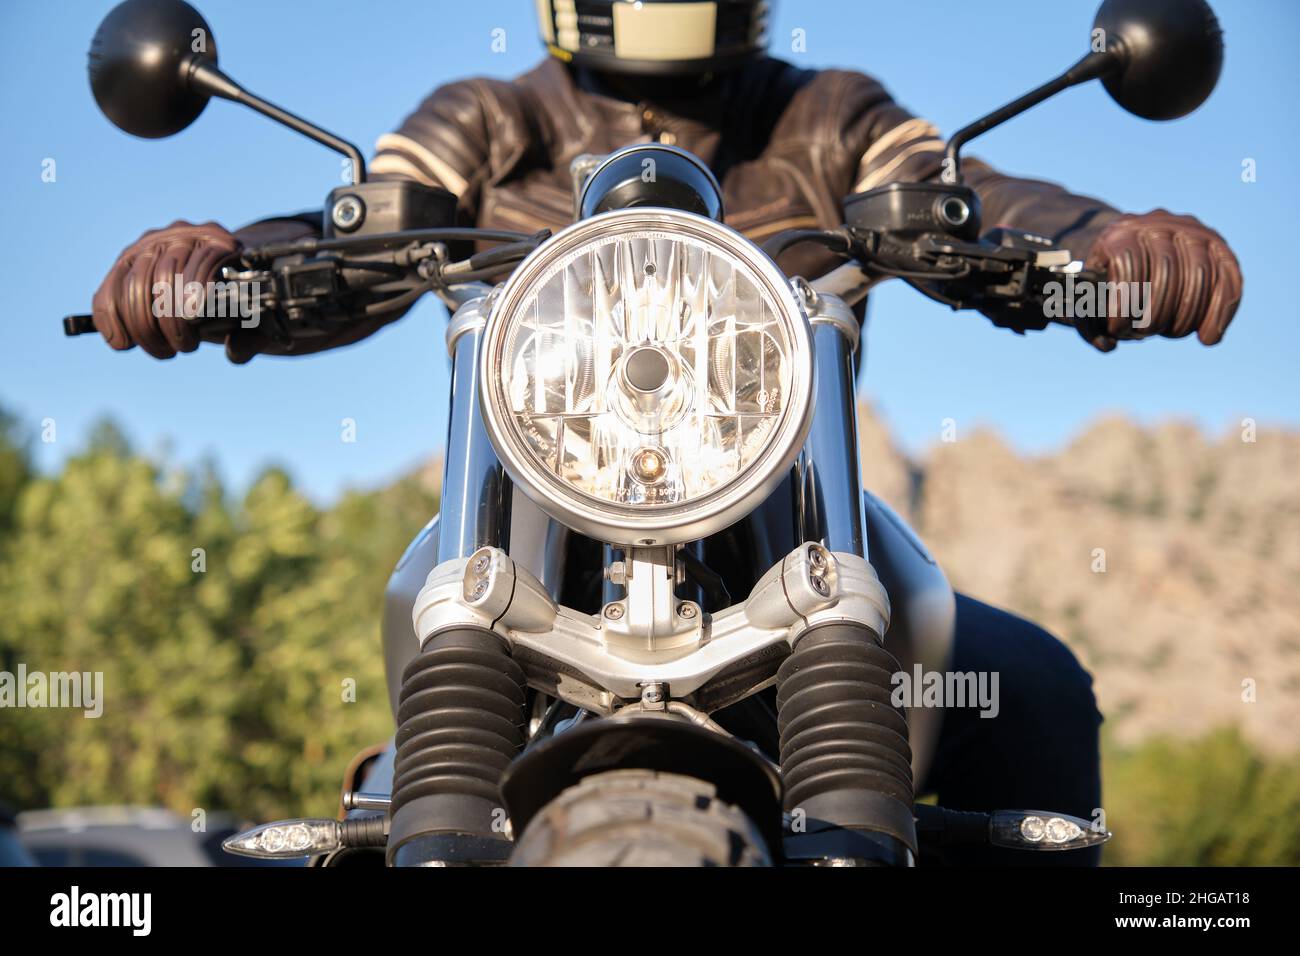 Motocicleta con faro encendido y persona irreconocible Foto de stock